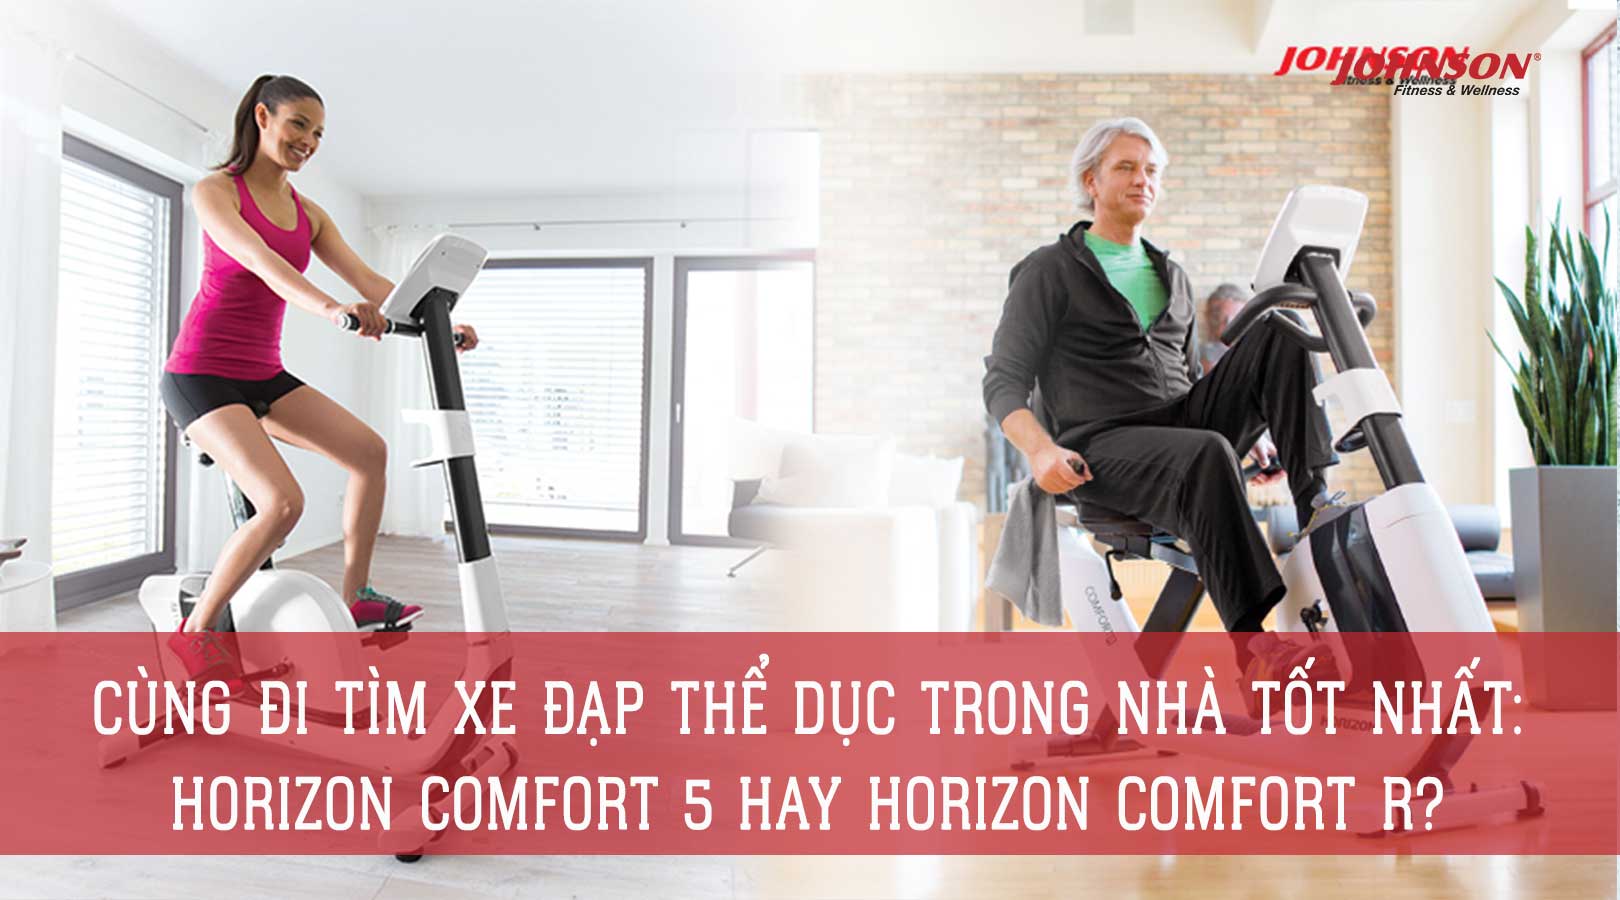 Cùng Đi Tìm Xe Đạp Thể Dục Trong Nhà Tốt Nhất: Horizon Comfort 5 hay Horizon Comfort R?